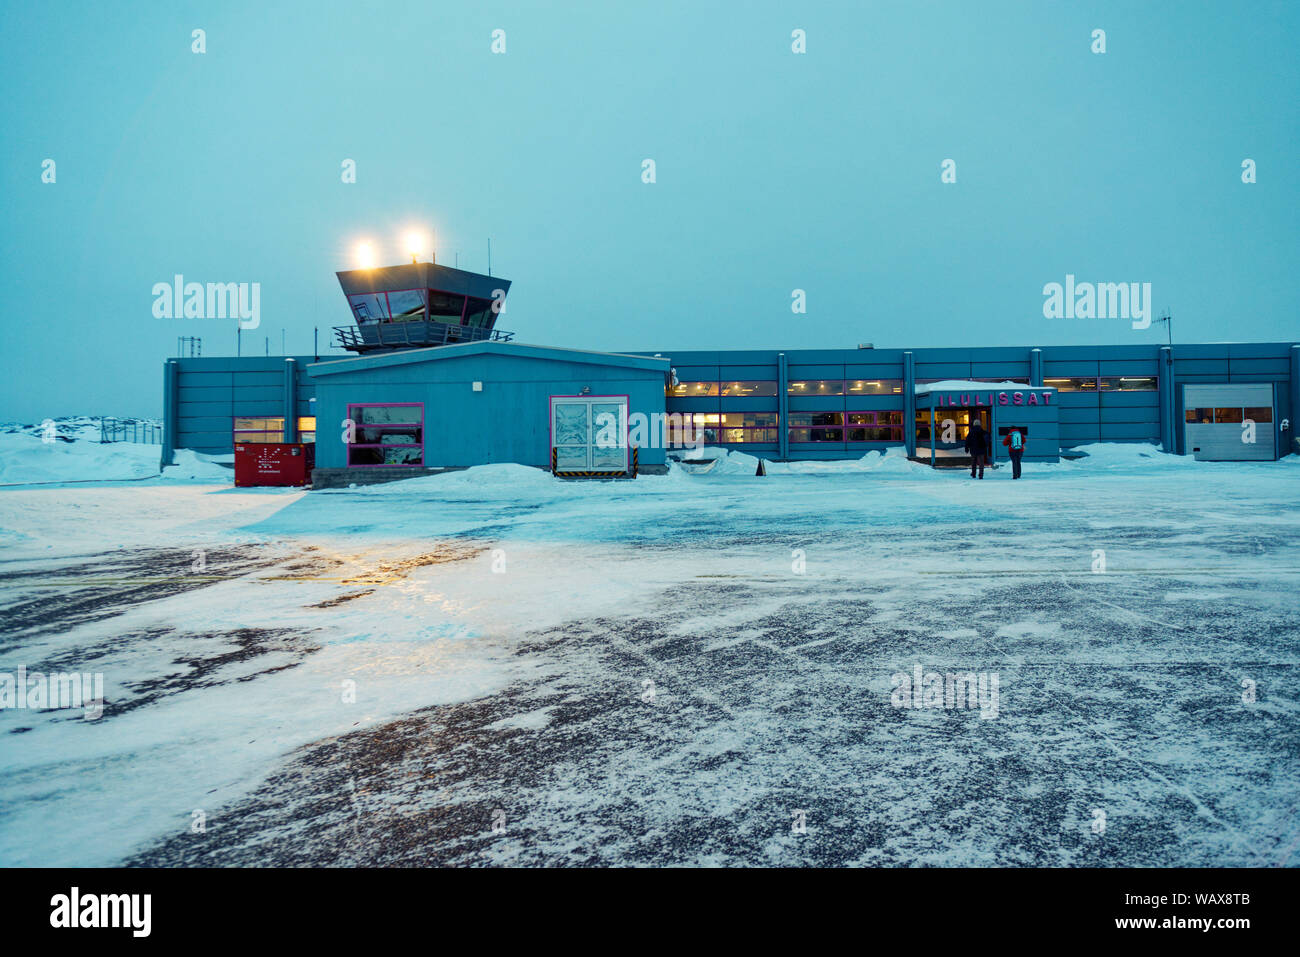 Flughafen von Avannnaata Kommunia, Ilulissat, Groenland, Danemark. Nuit polaire à l'aéroport d'Ilulissat, Groenland, Danemark. Banque D'Images